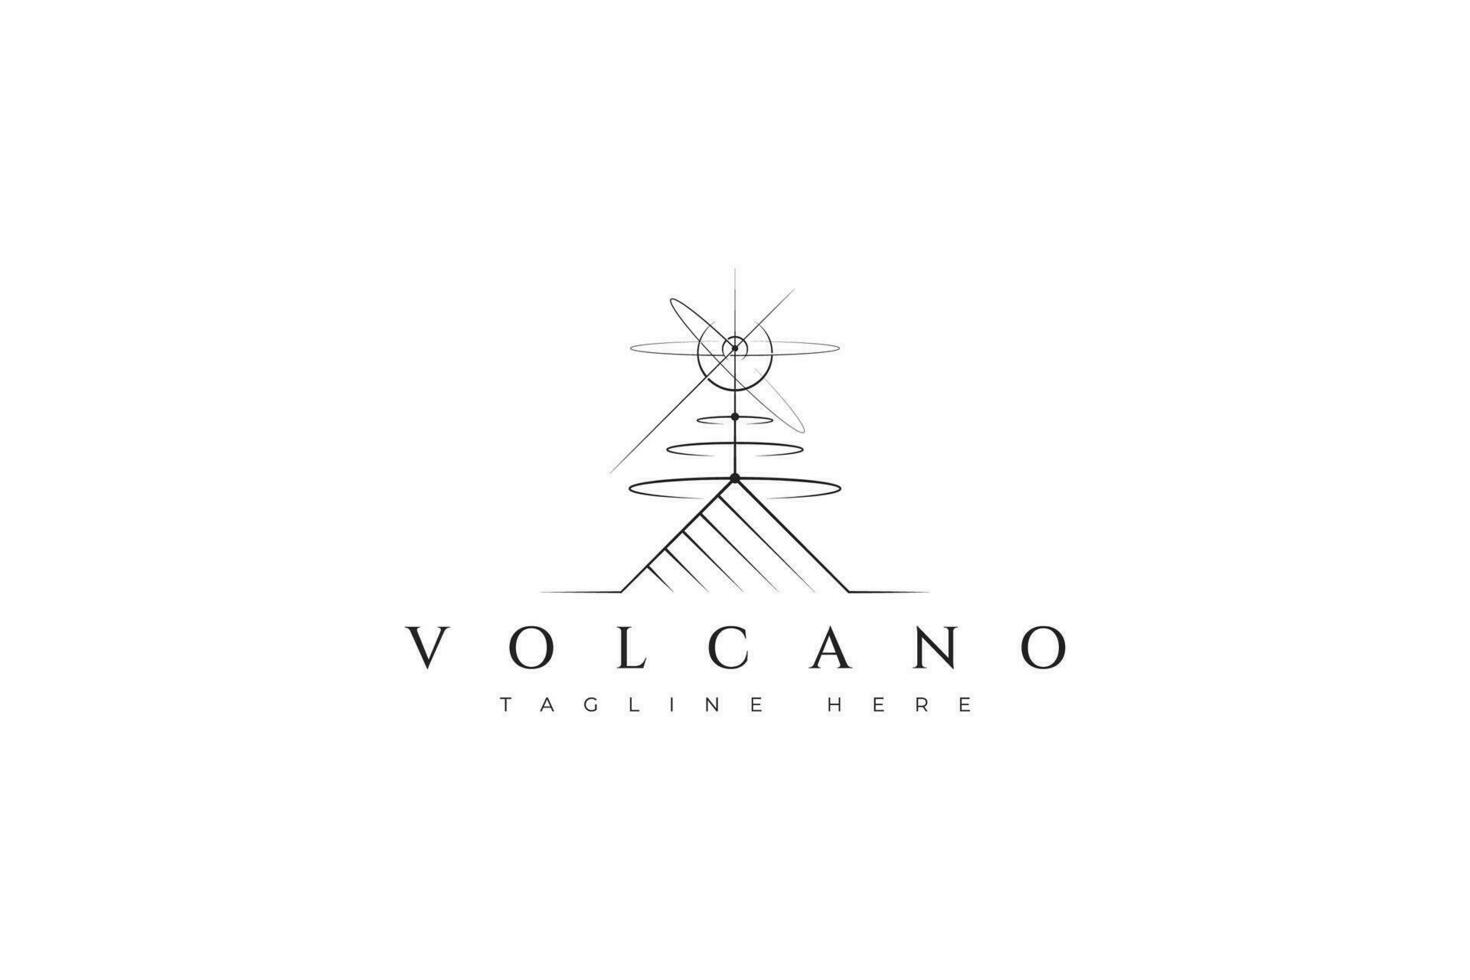 abstrakt utbrott vulkanisk, explosion vulkan berg illustration, apokalyps tecken symbol logotyp vektor